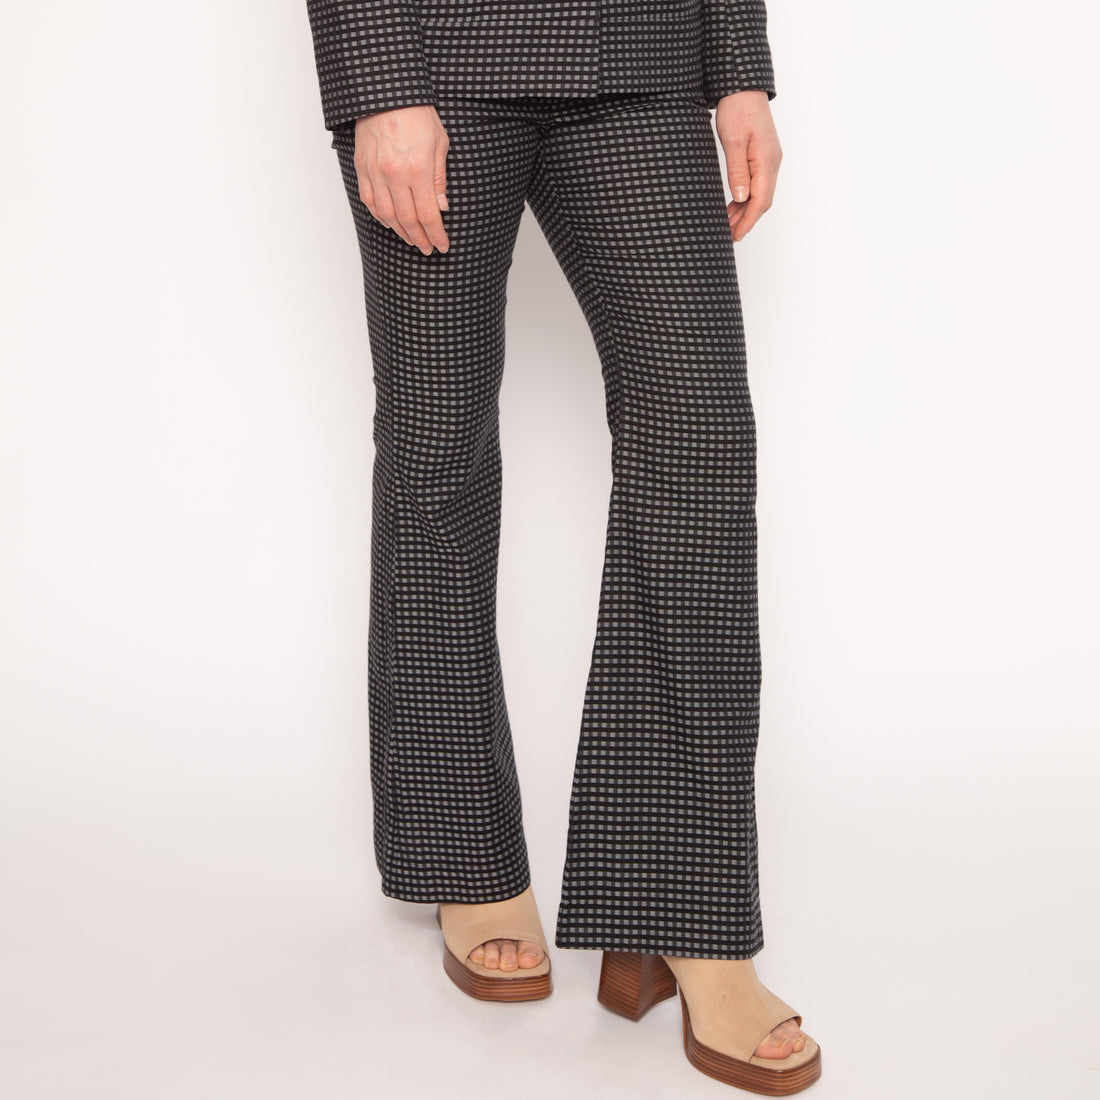 Pantalon tailleur évasé - Coton - Vichy gris et noirs - NUYHENN